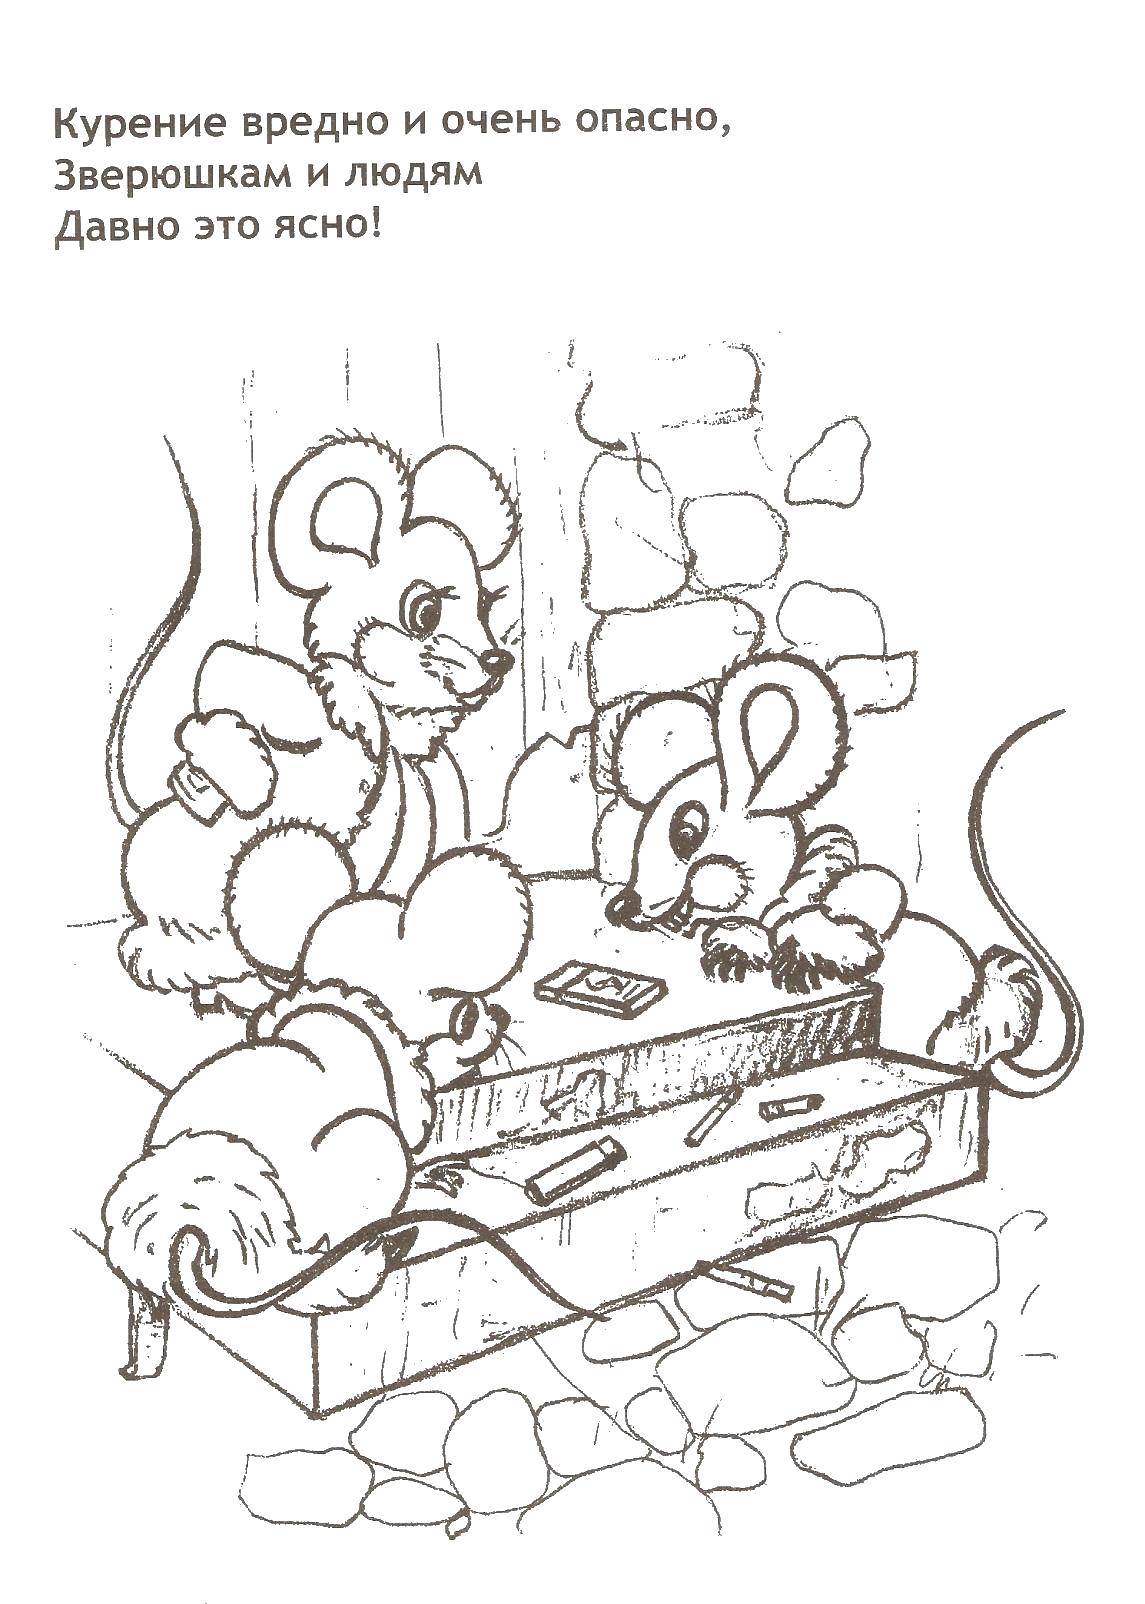 Название: Раскраска Мышки нашли спички. Категория: пожар. Теги: пожар, дети, спички, дым, животные.